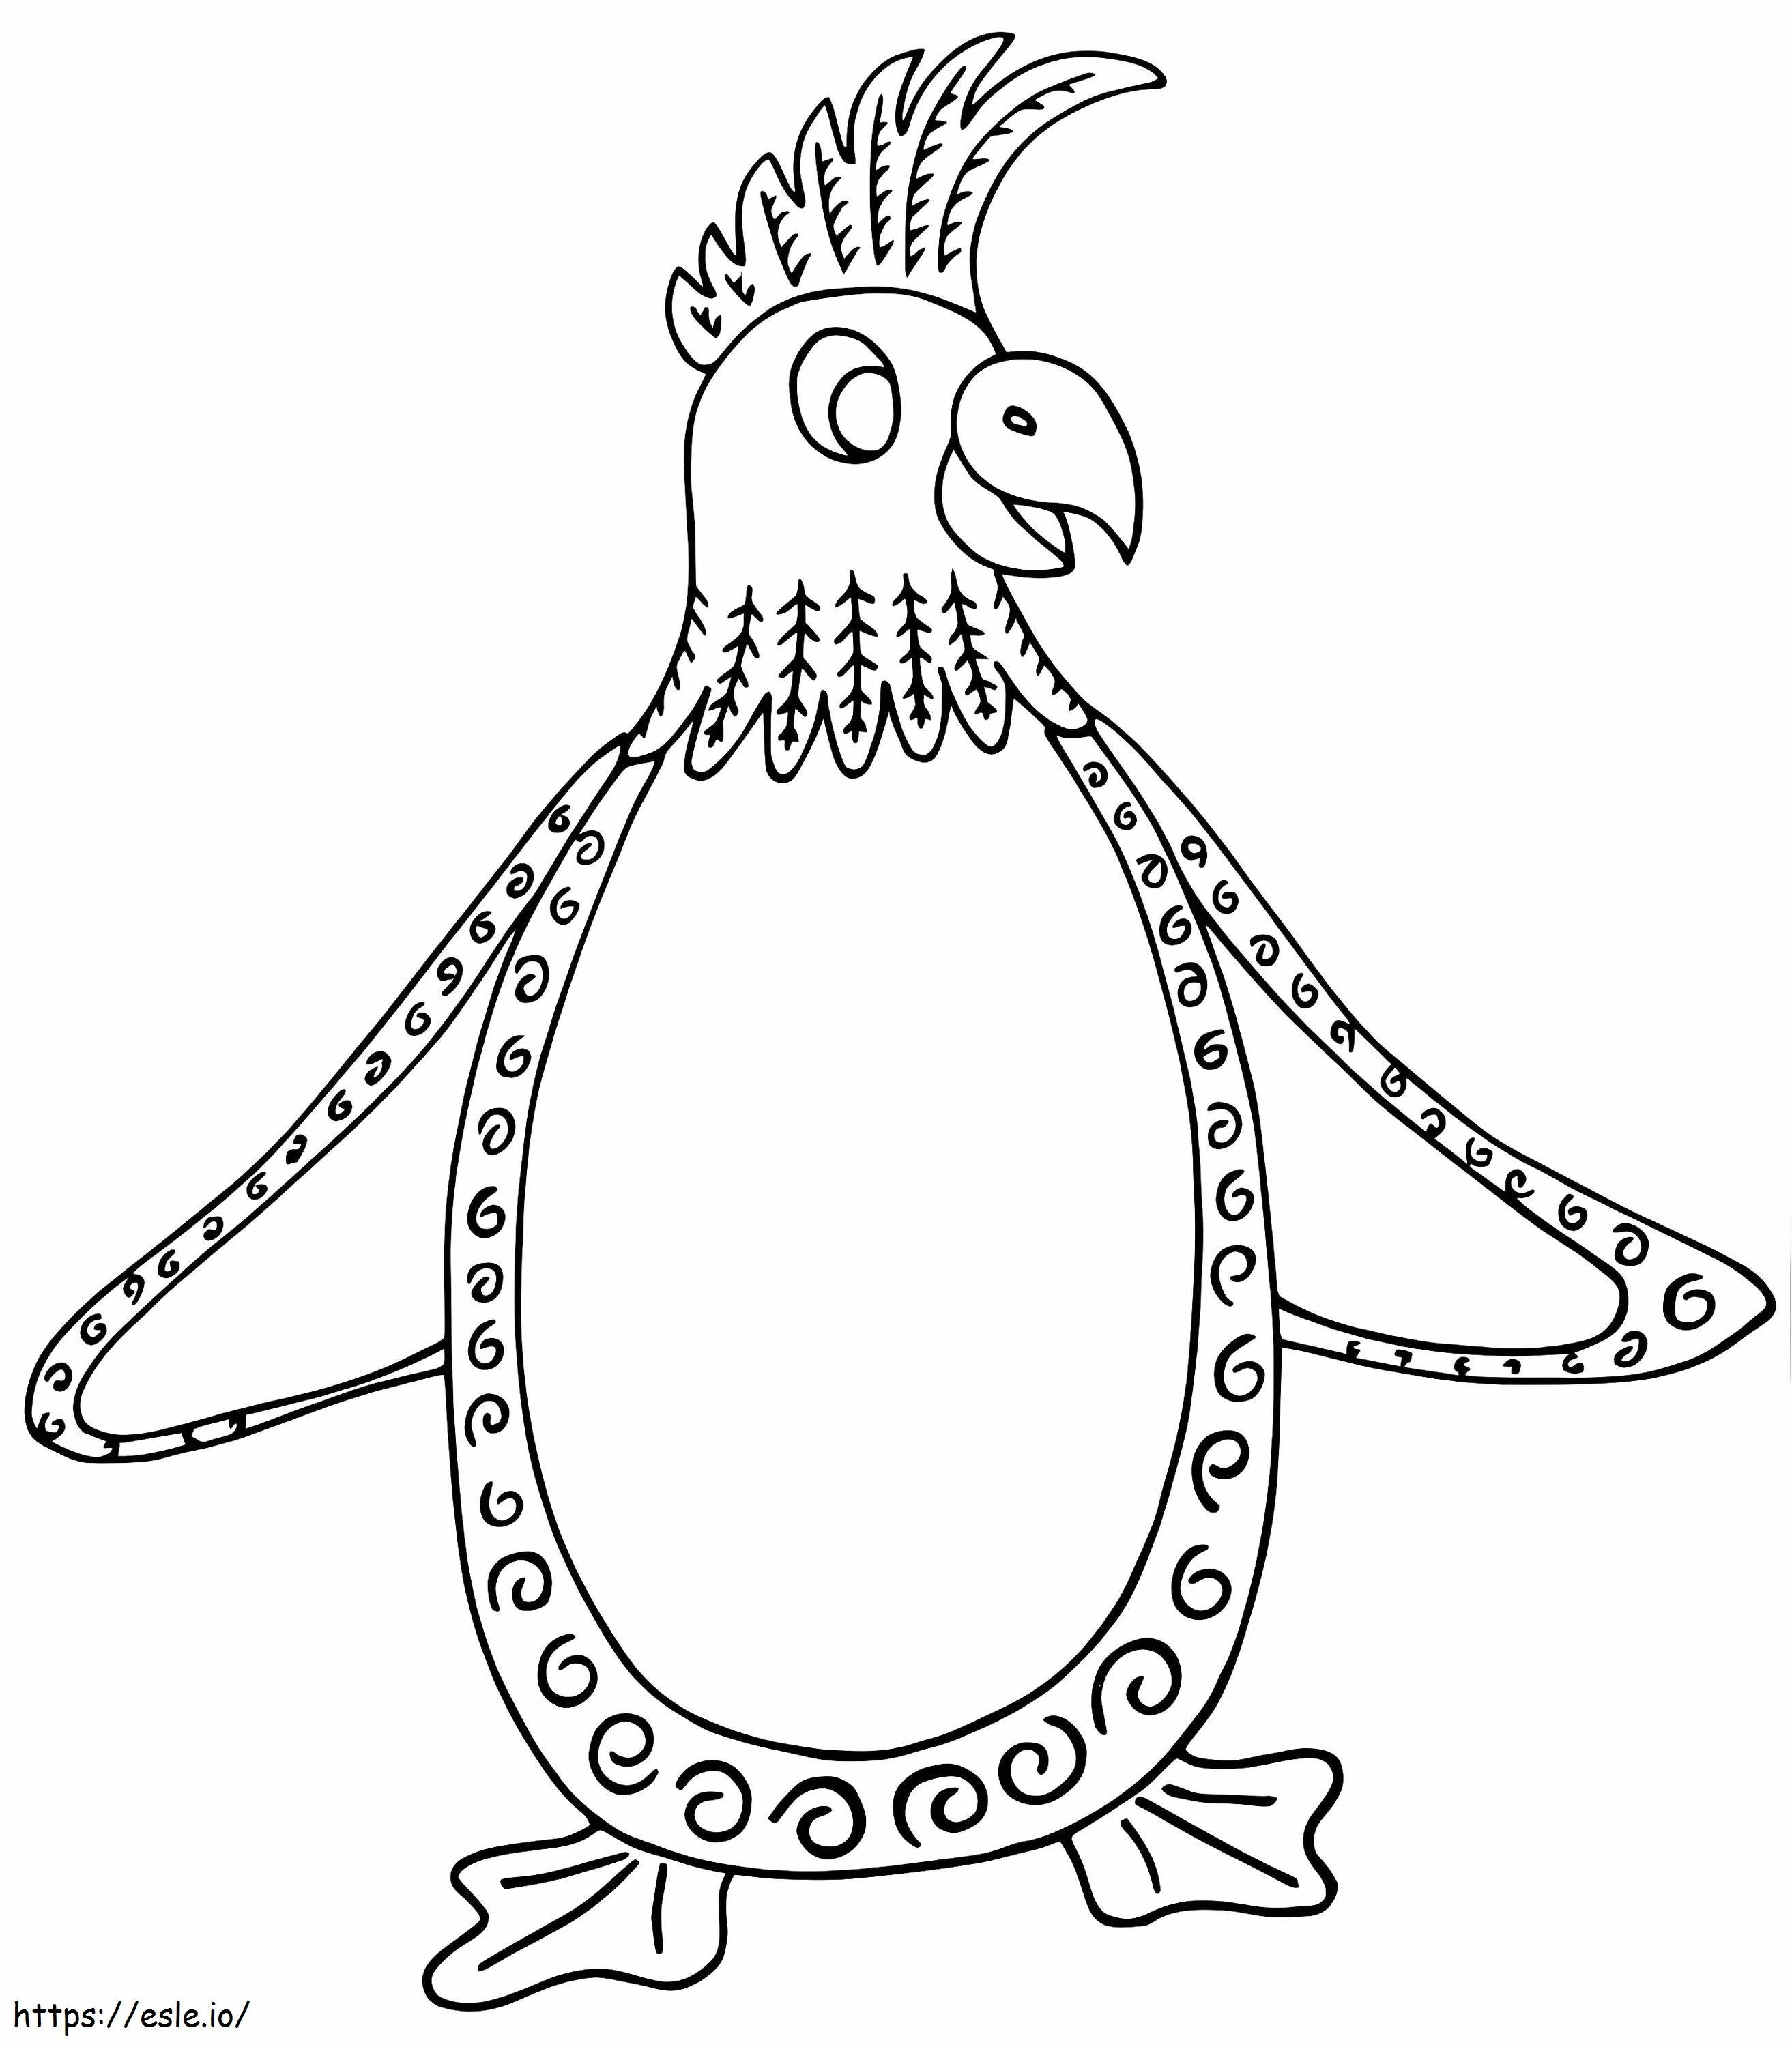 Coloriage Pingouin Alebrijes à imprimer dessin